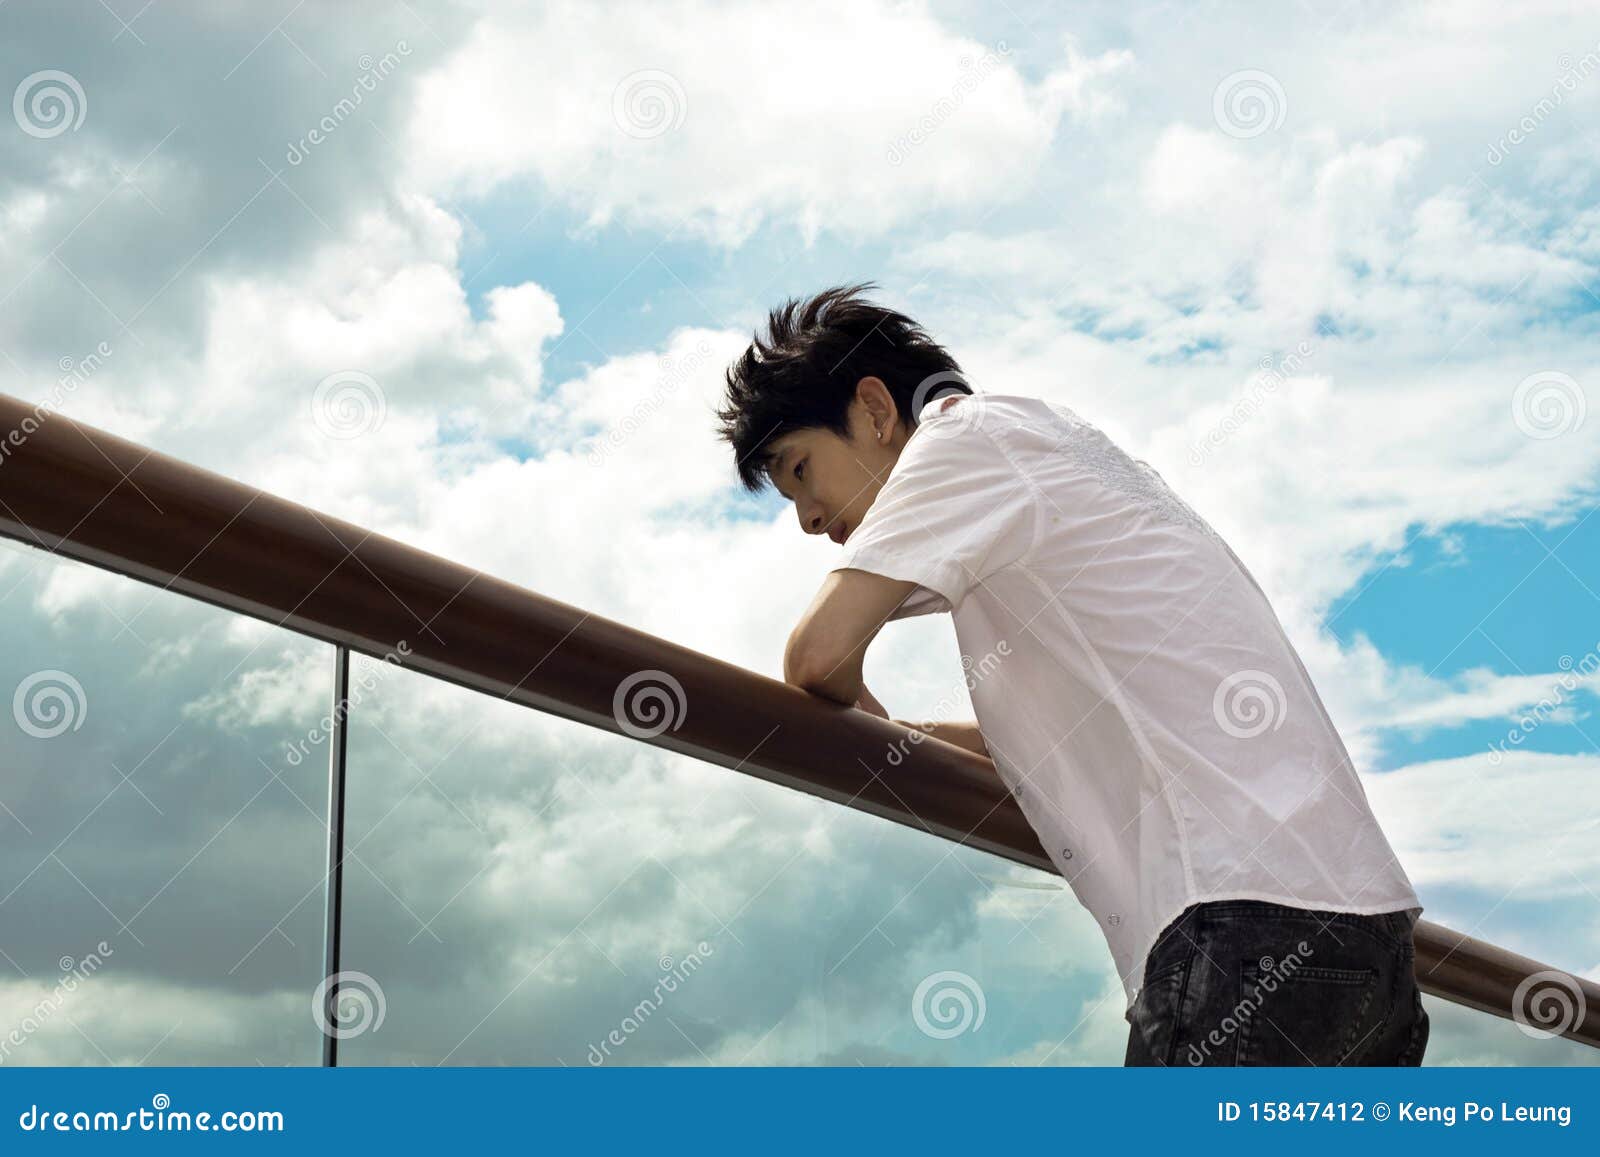 Sad boy stock photo. Image of balustrade, hapanese, depressed ...